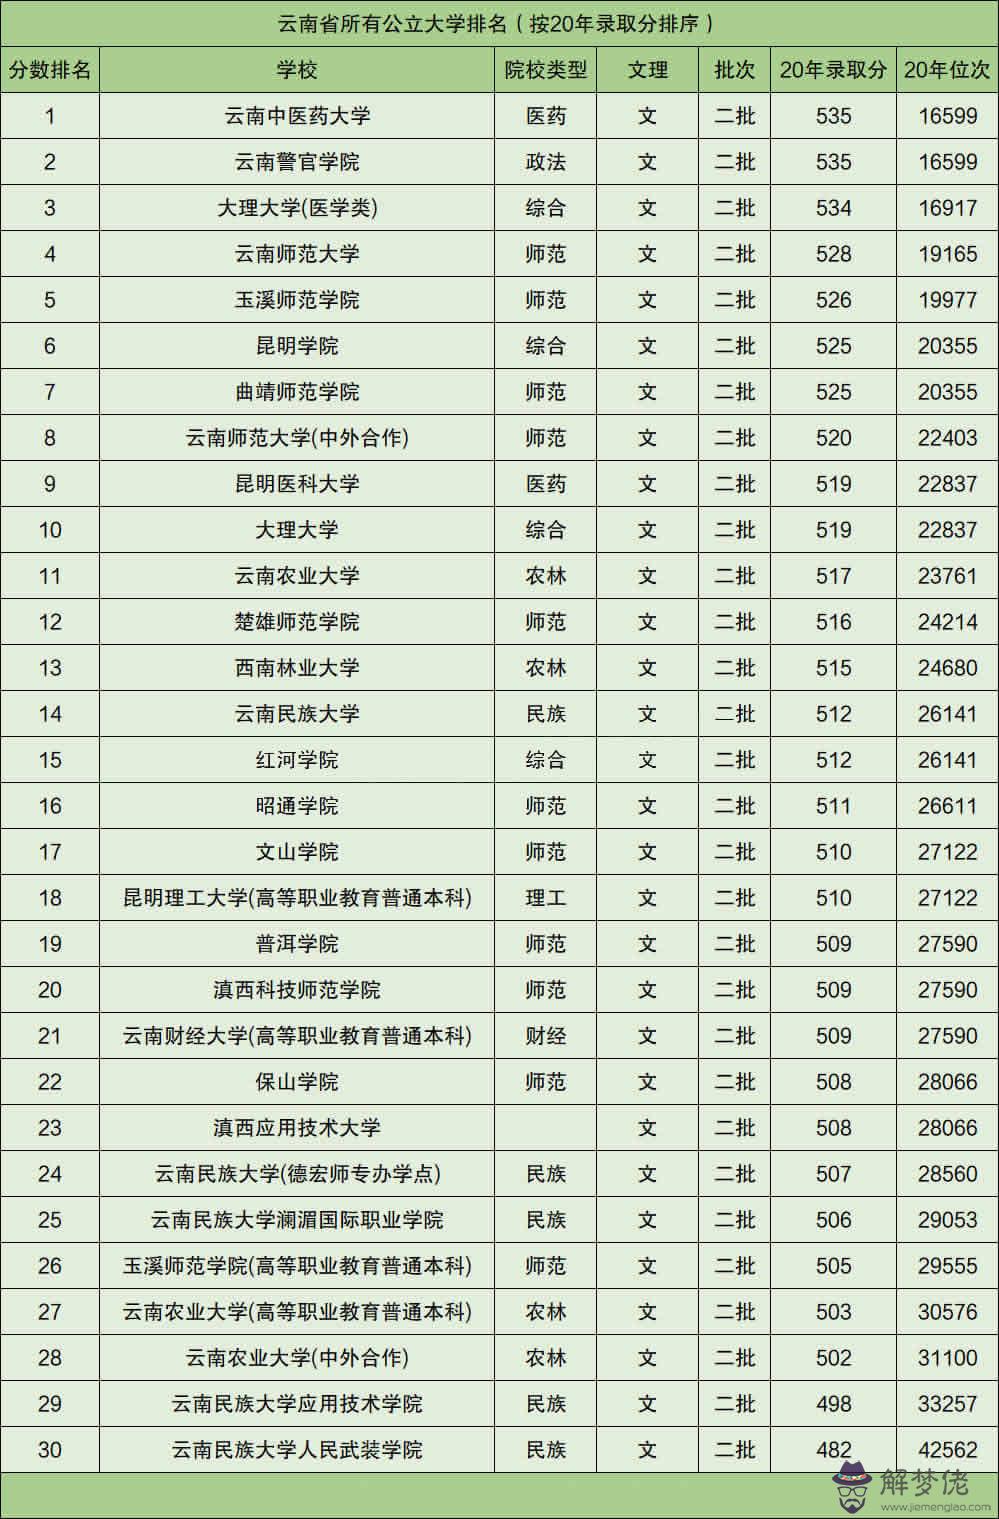 2、中國最發達的省份排名:中國省份十大區域富裕排行？